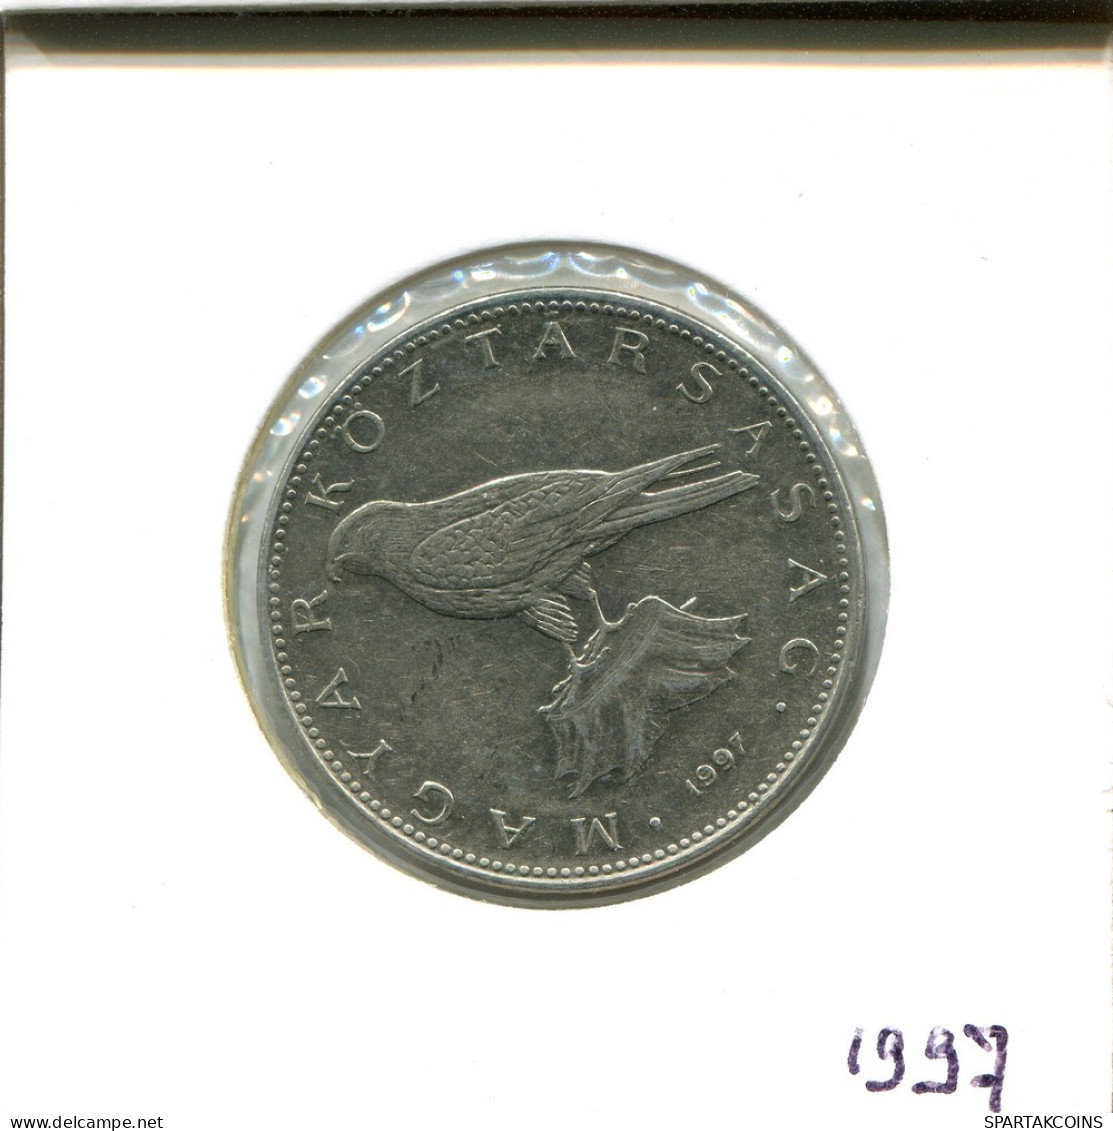 50 FORINT 1997 HUNGRÍA HUNGARY Moneda #AS909.E.A - Hungary